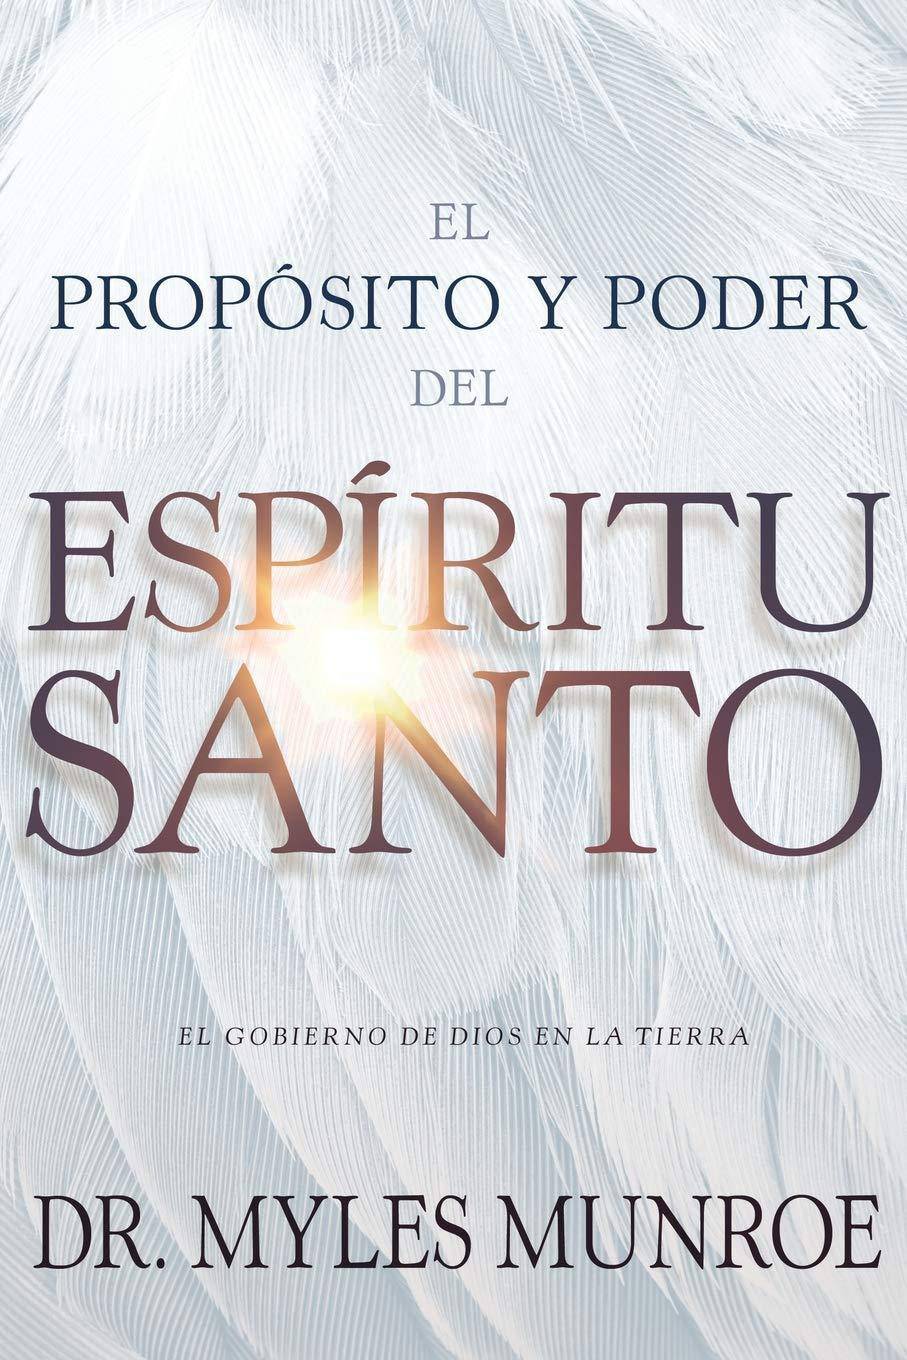 El propósito y el poder del Espíritu Santo - SureShot Books Publishing LLC